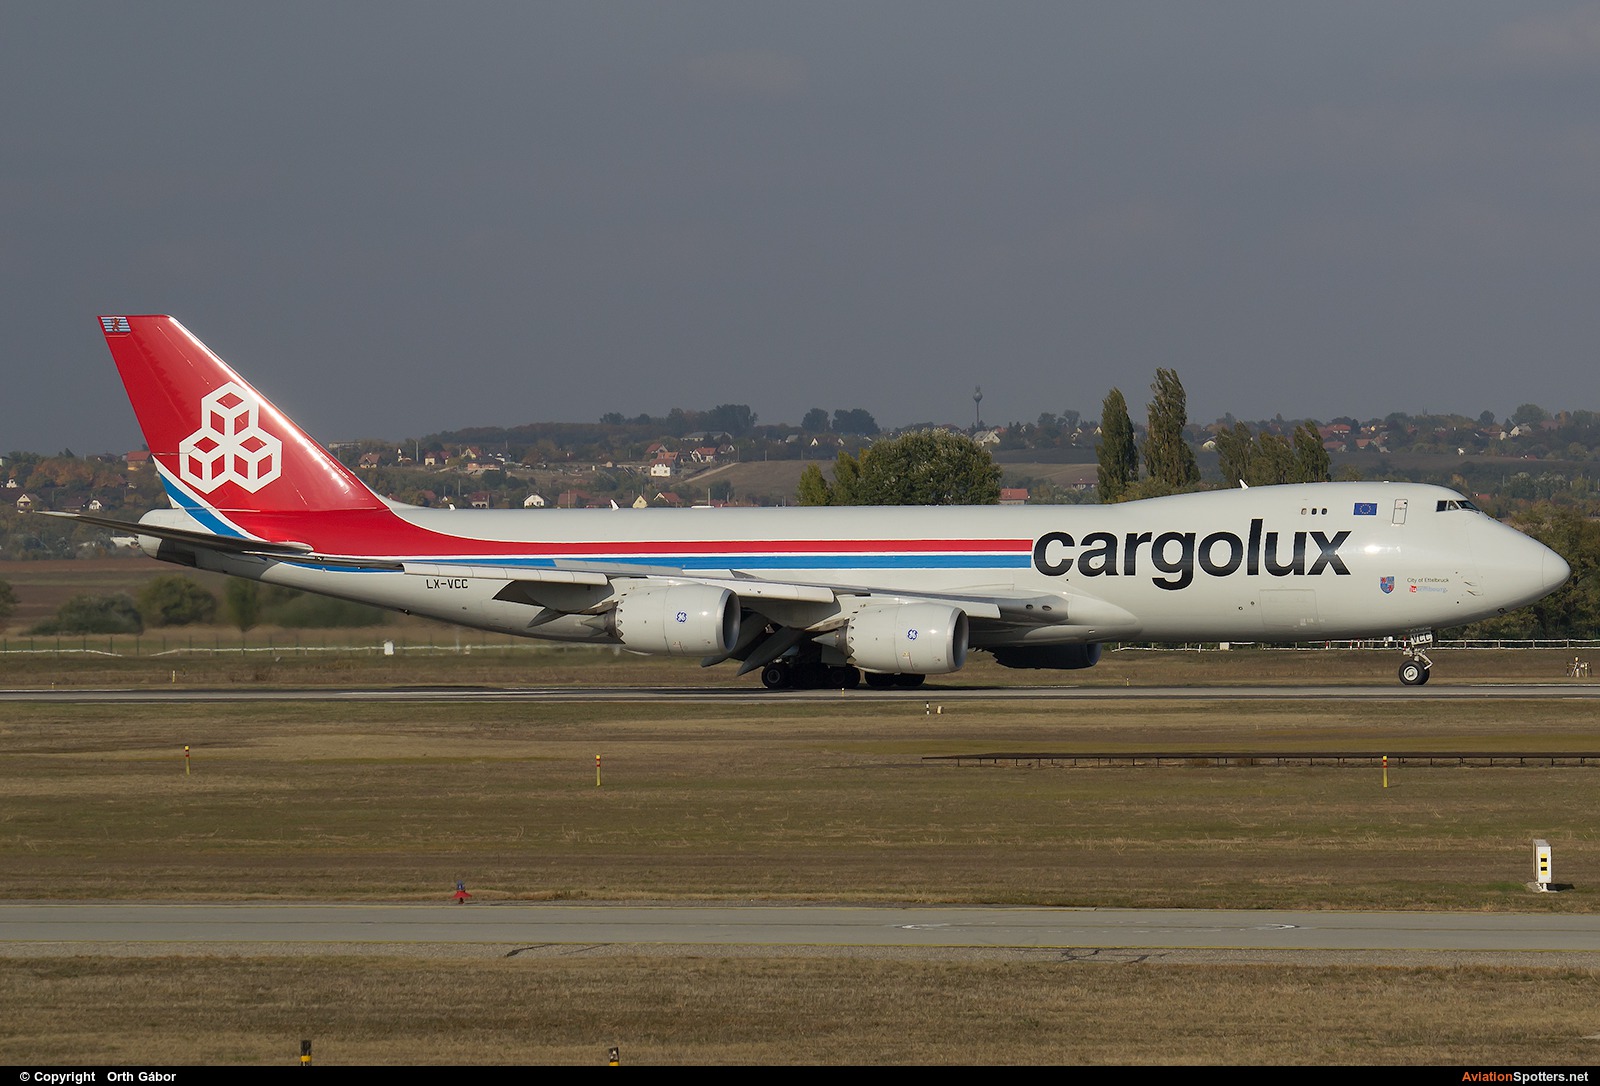 Cargolux  -  747-8R7F  (LX-VCC) By Orth Gábor (Roodkop)